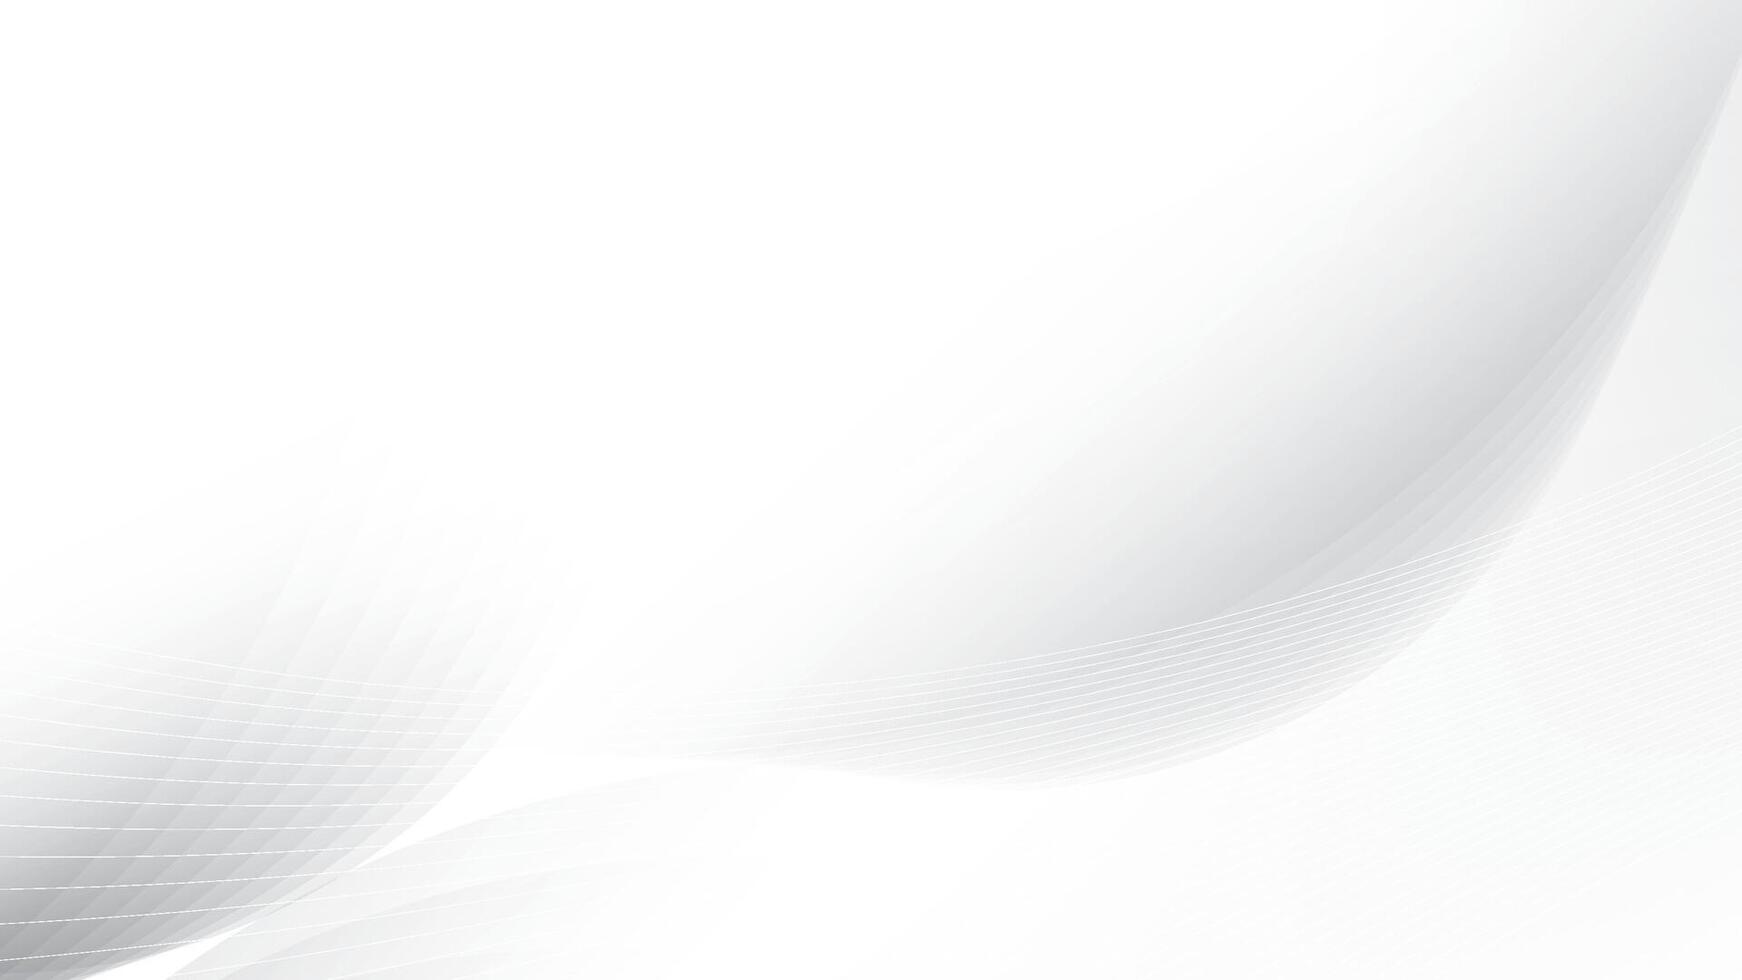 abstrakt Weiß und grau Farbe, modern Design Streifen Hintergrund mit runden Form. Vektor Illustration.